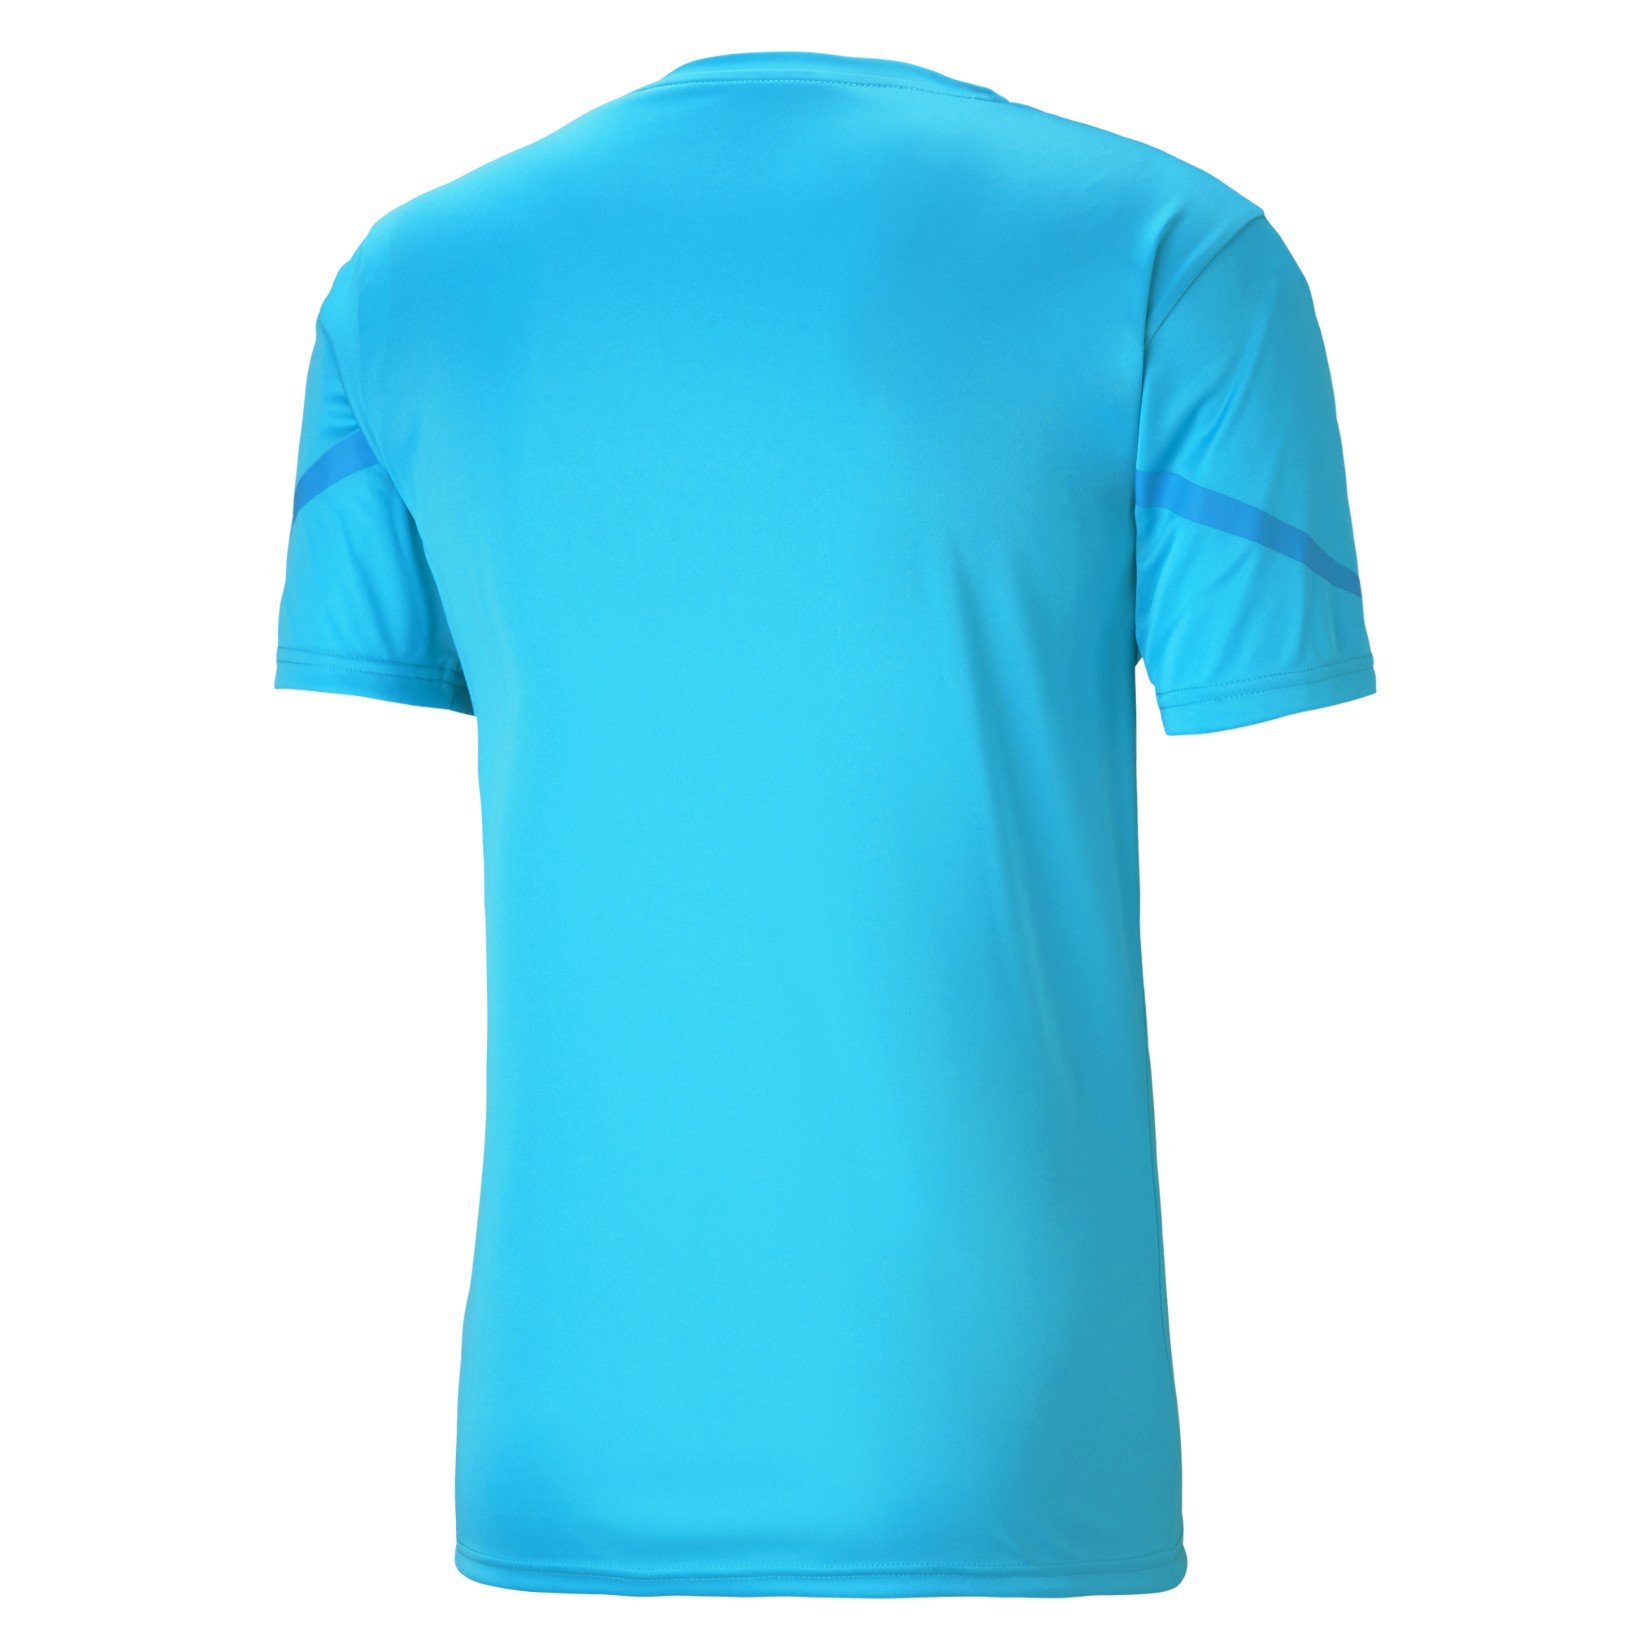 Puma Team Flash Short Sleeve Shirt - Kitlocker.com